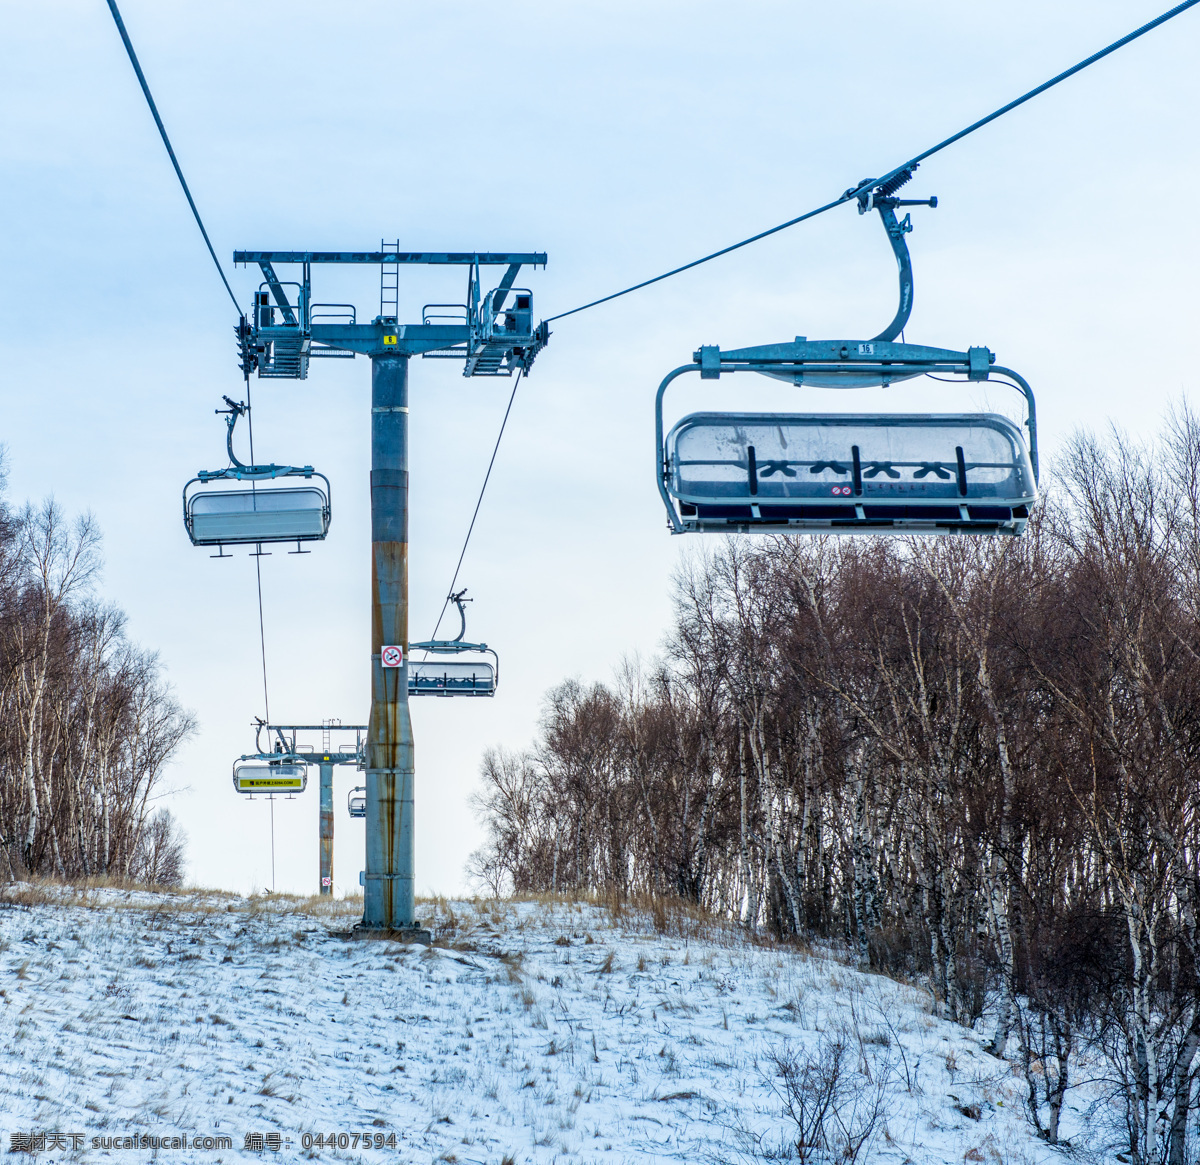 滑雪缆车 滑雪 缆车 旅游 冬令营 滑雪场 自然景观 自然风光